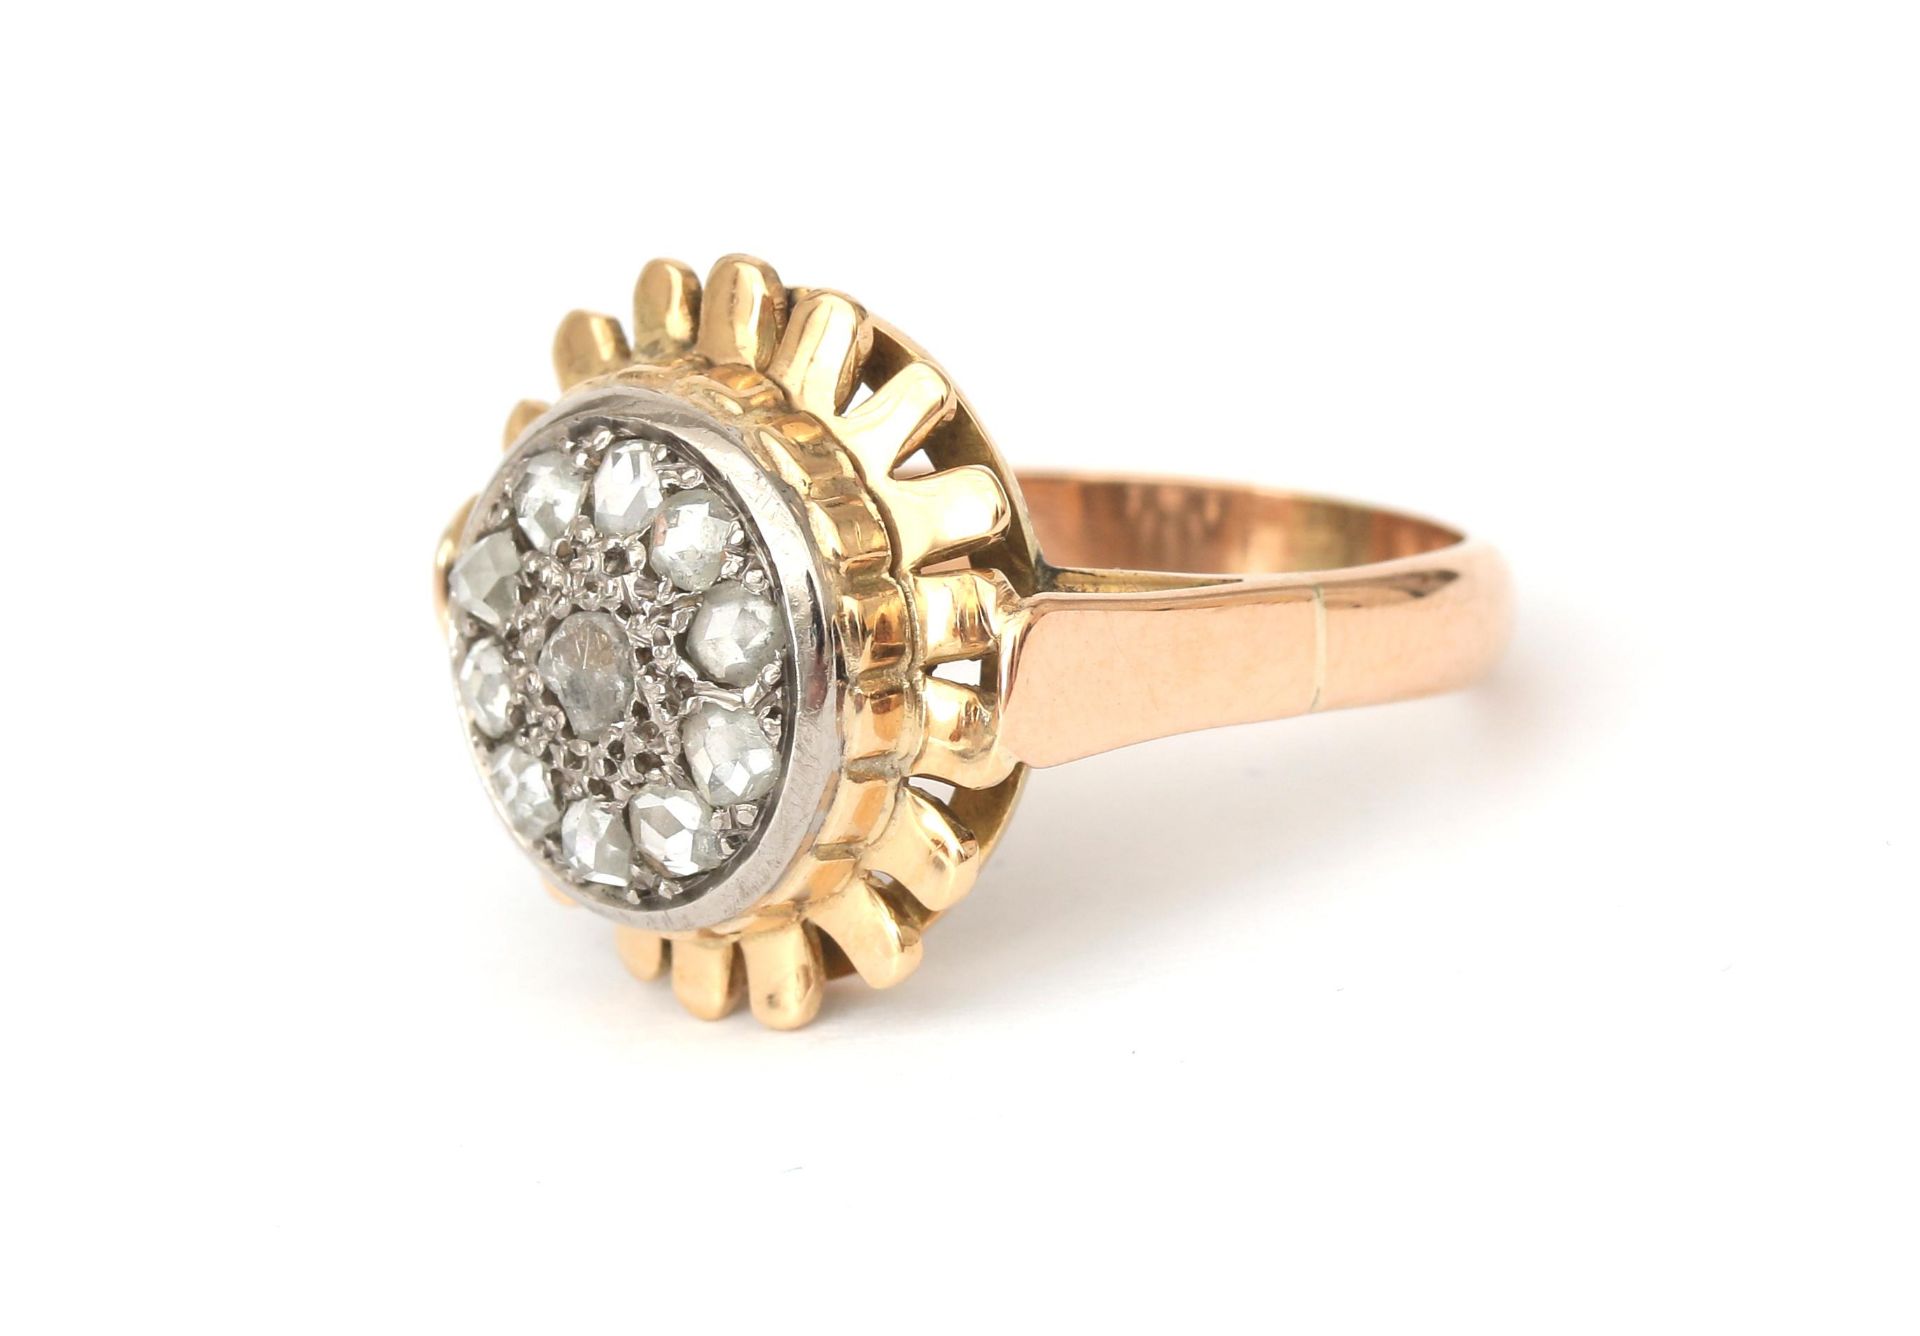 An 18 karat gold rose cut diamond cluster ring - Image 2 of 4